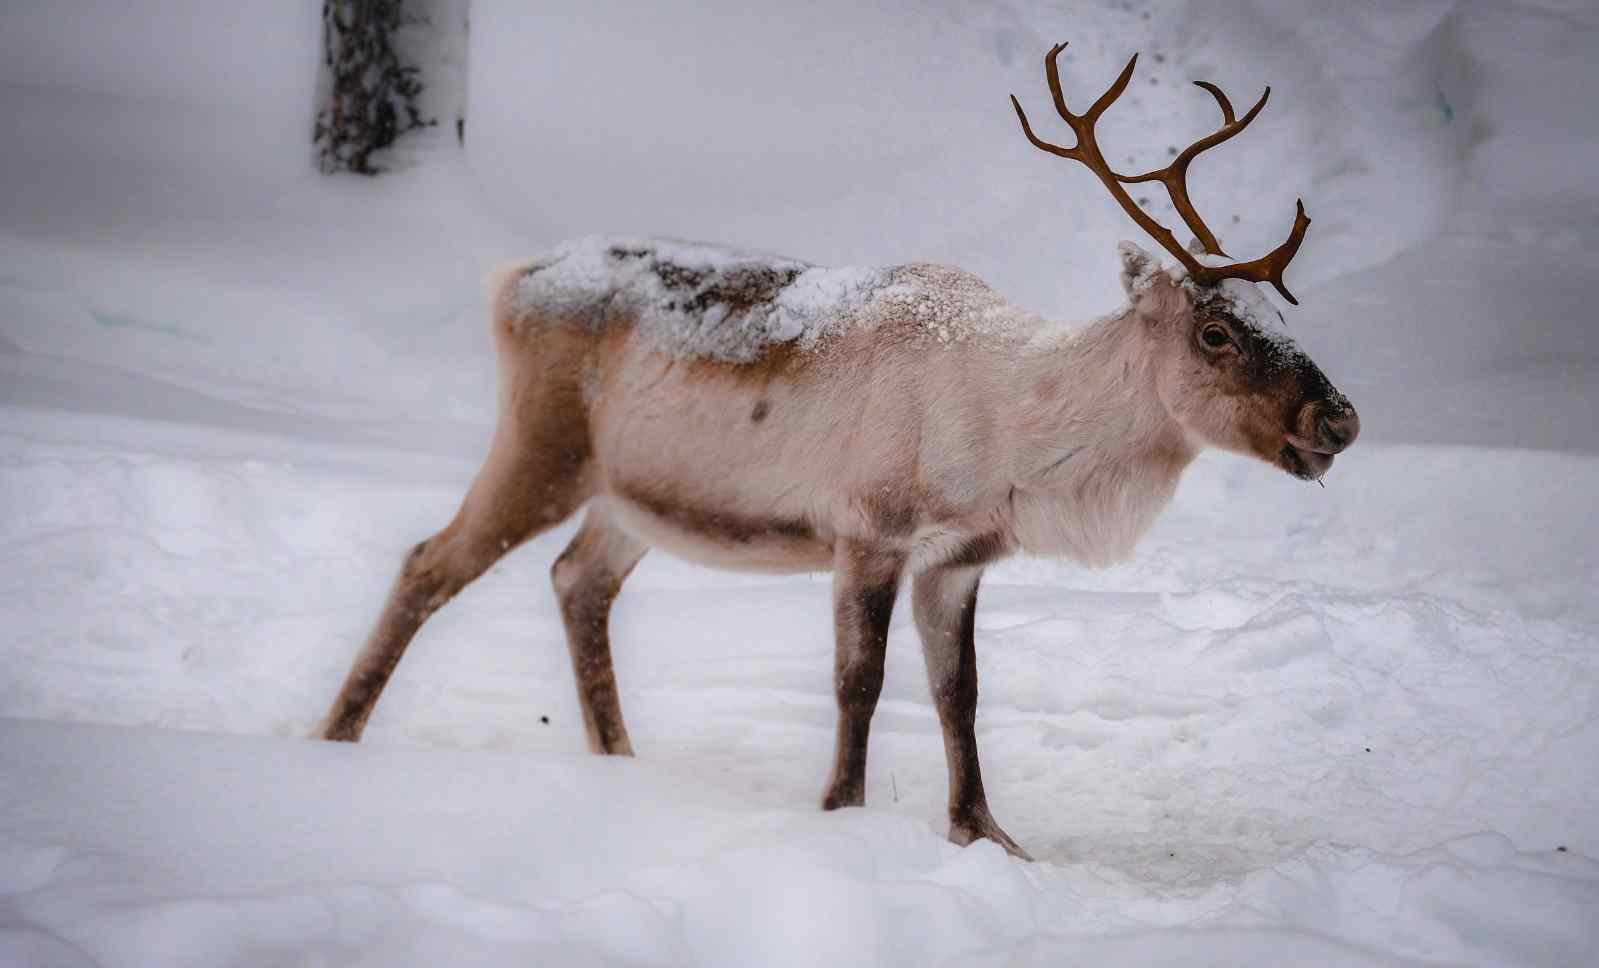 Do all reindeer turn white?